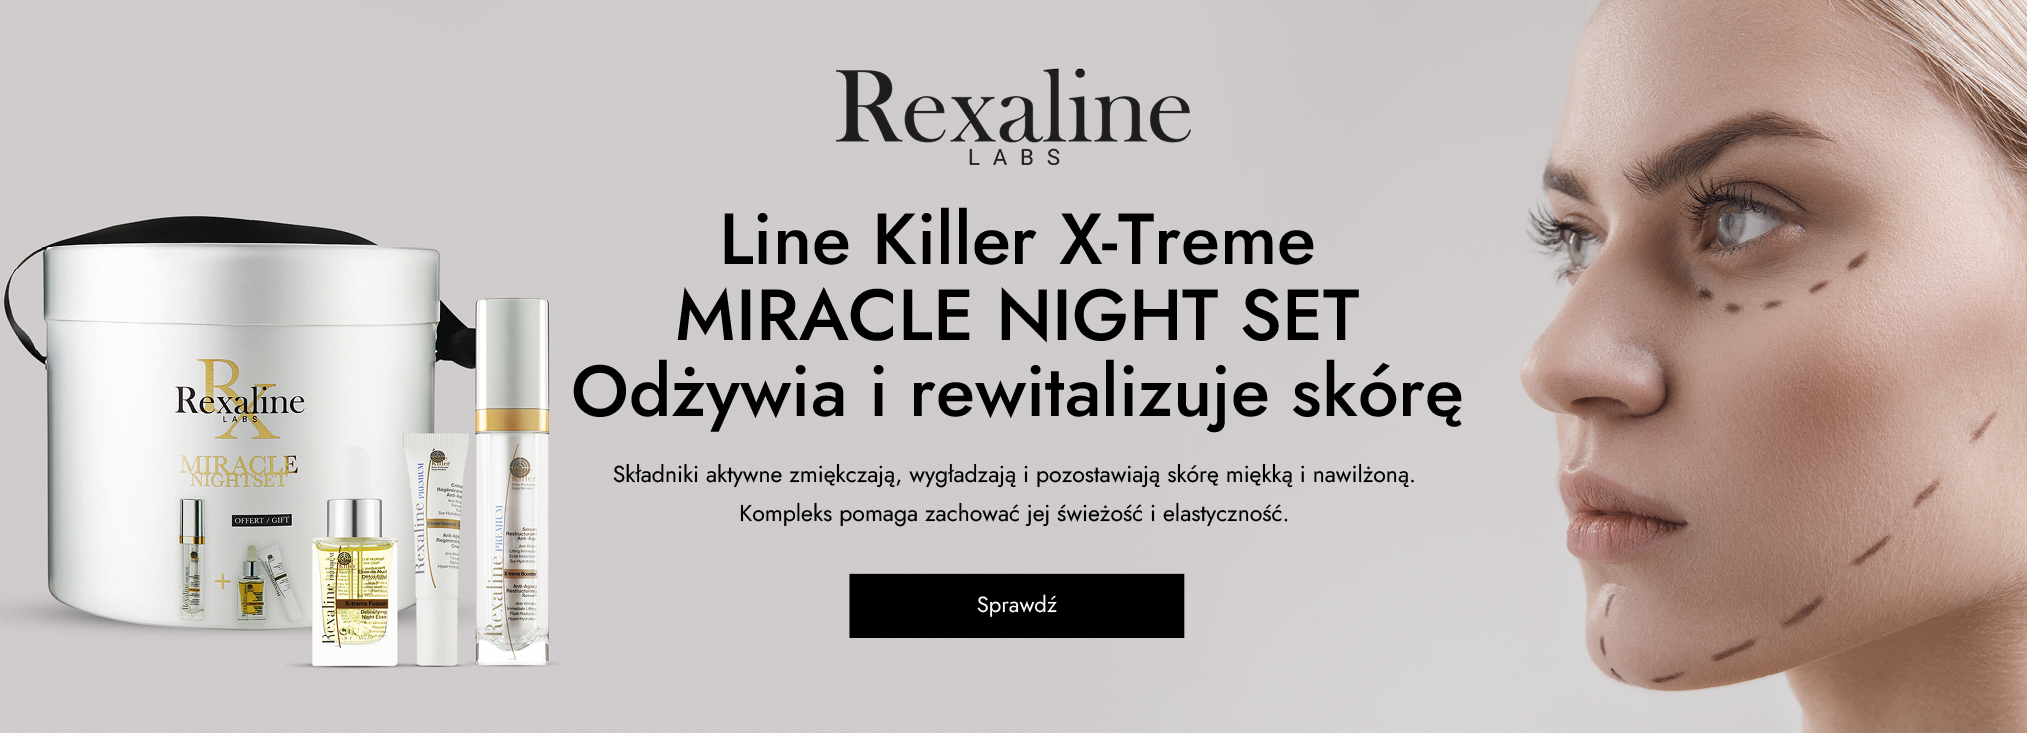 Rexaline_anti-age